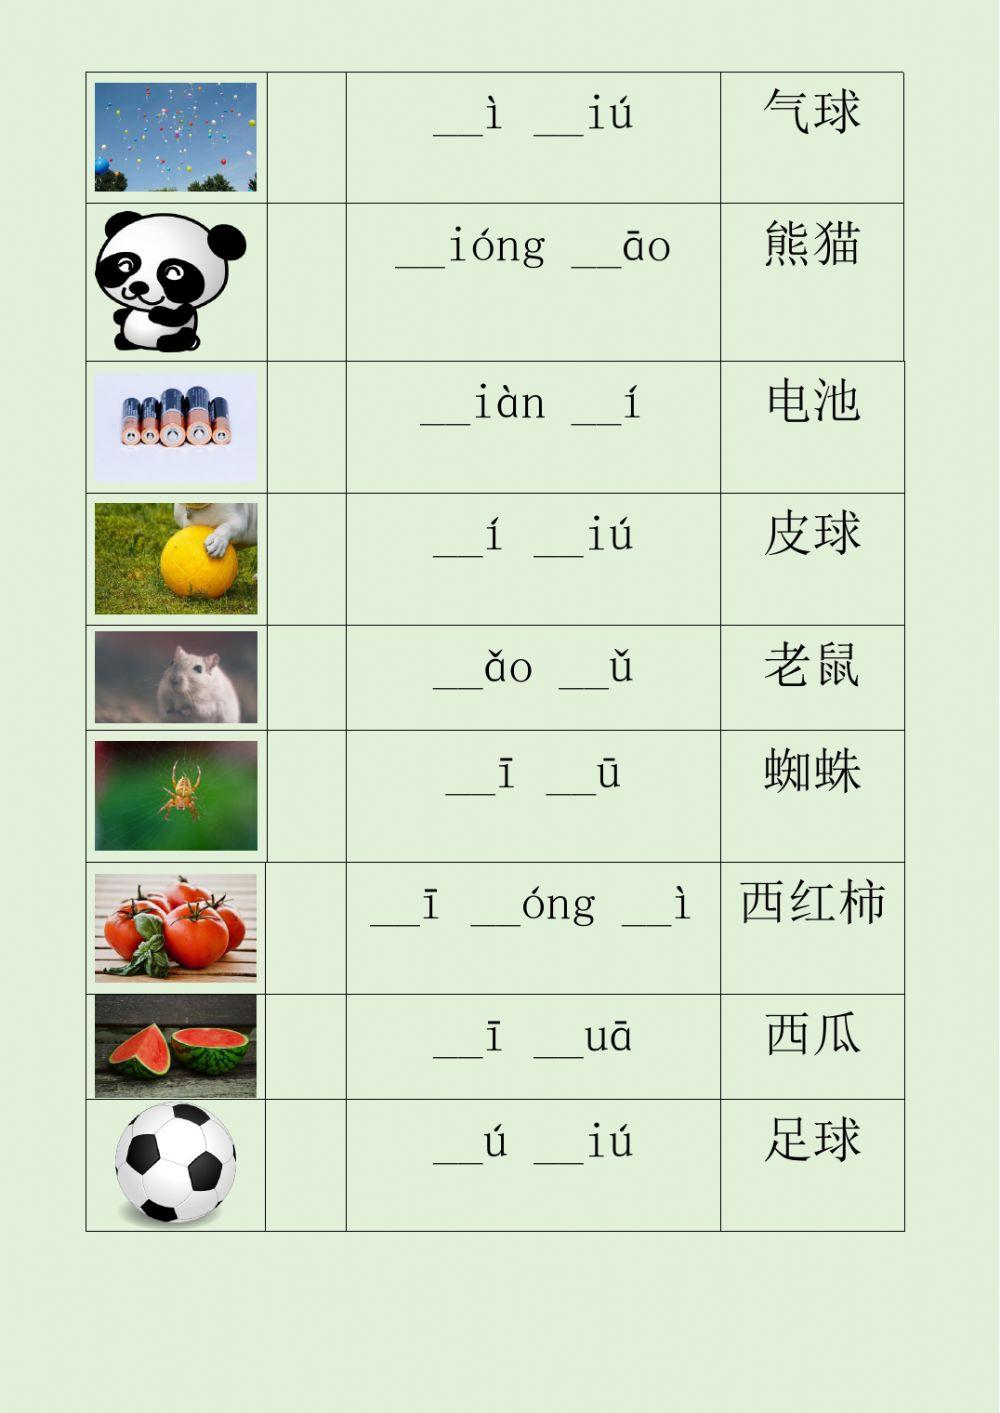 汉语 中文 拼音听力练习一  Pinyin Listening Practice 1